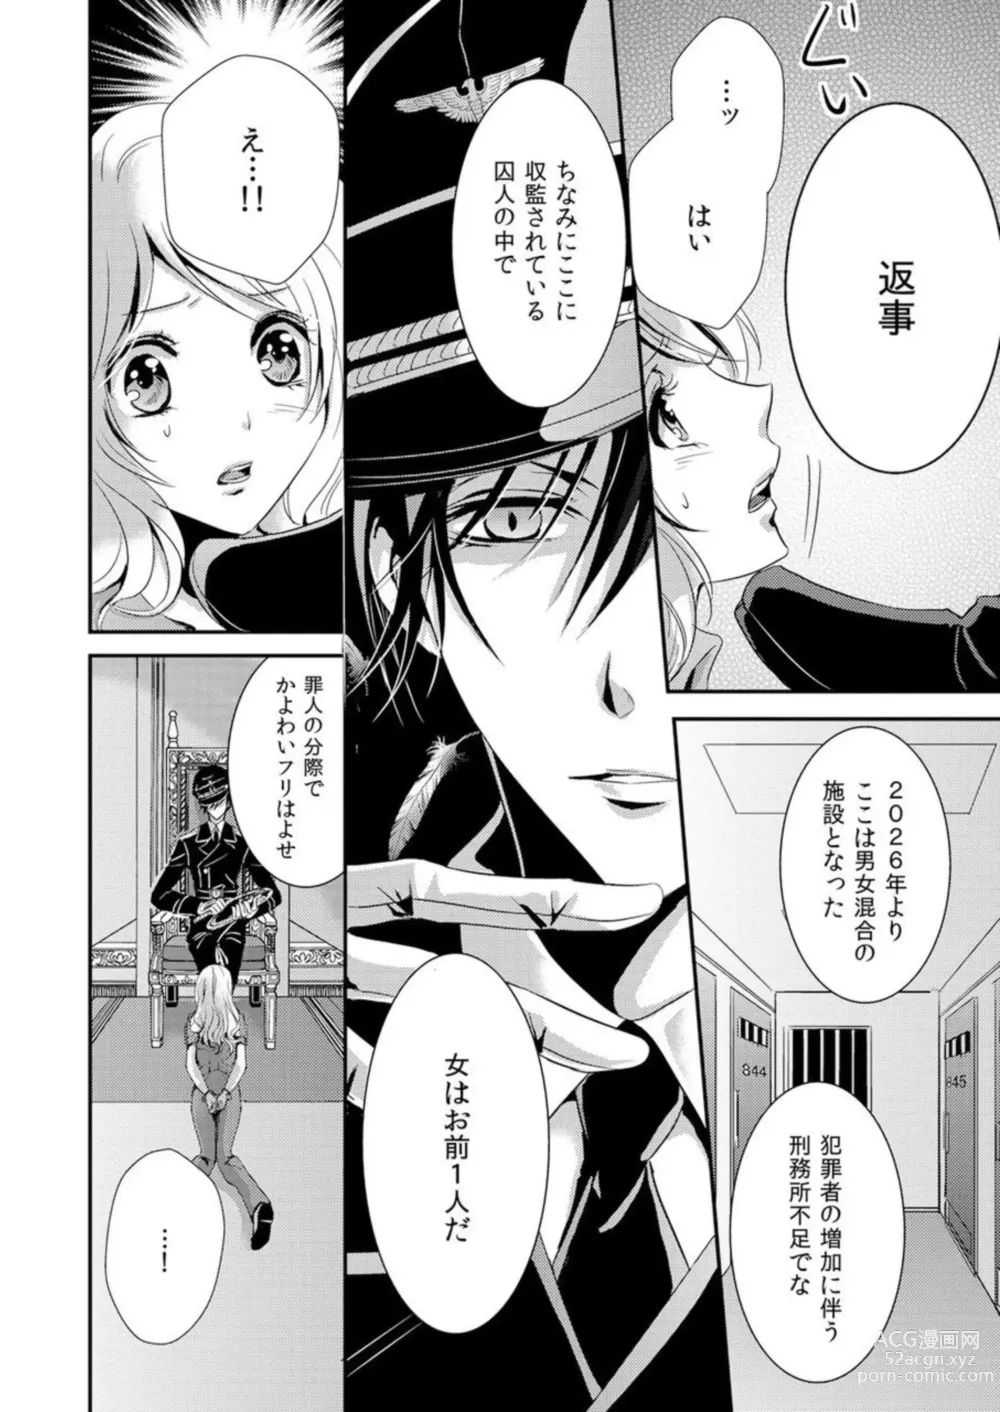 Page 8 of manga Kono Mama ja... Iku...